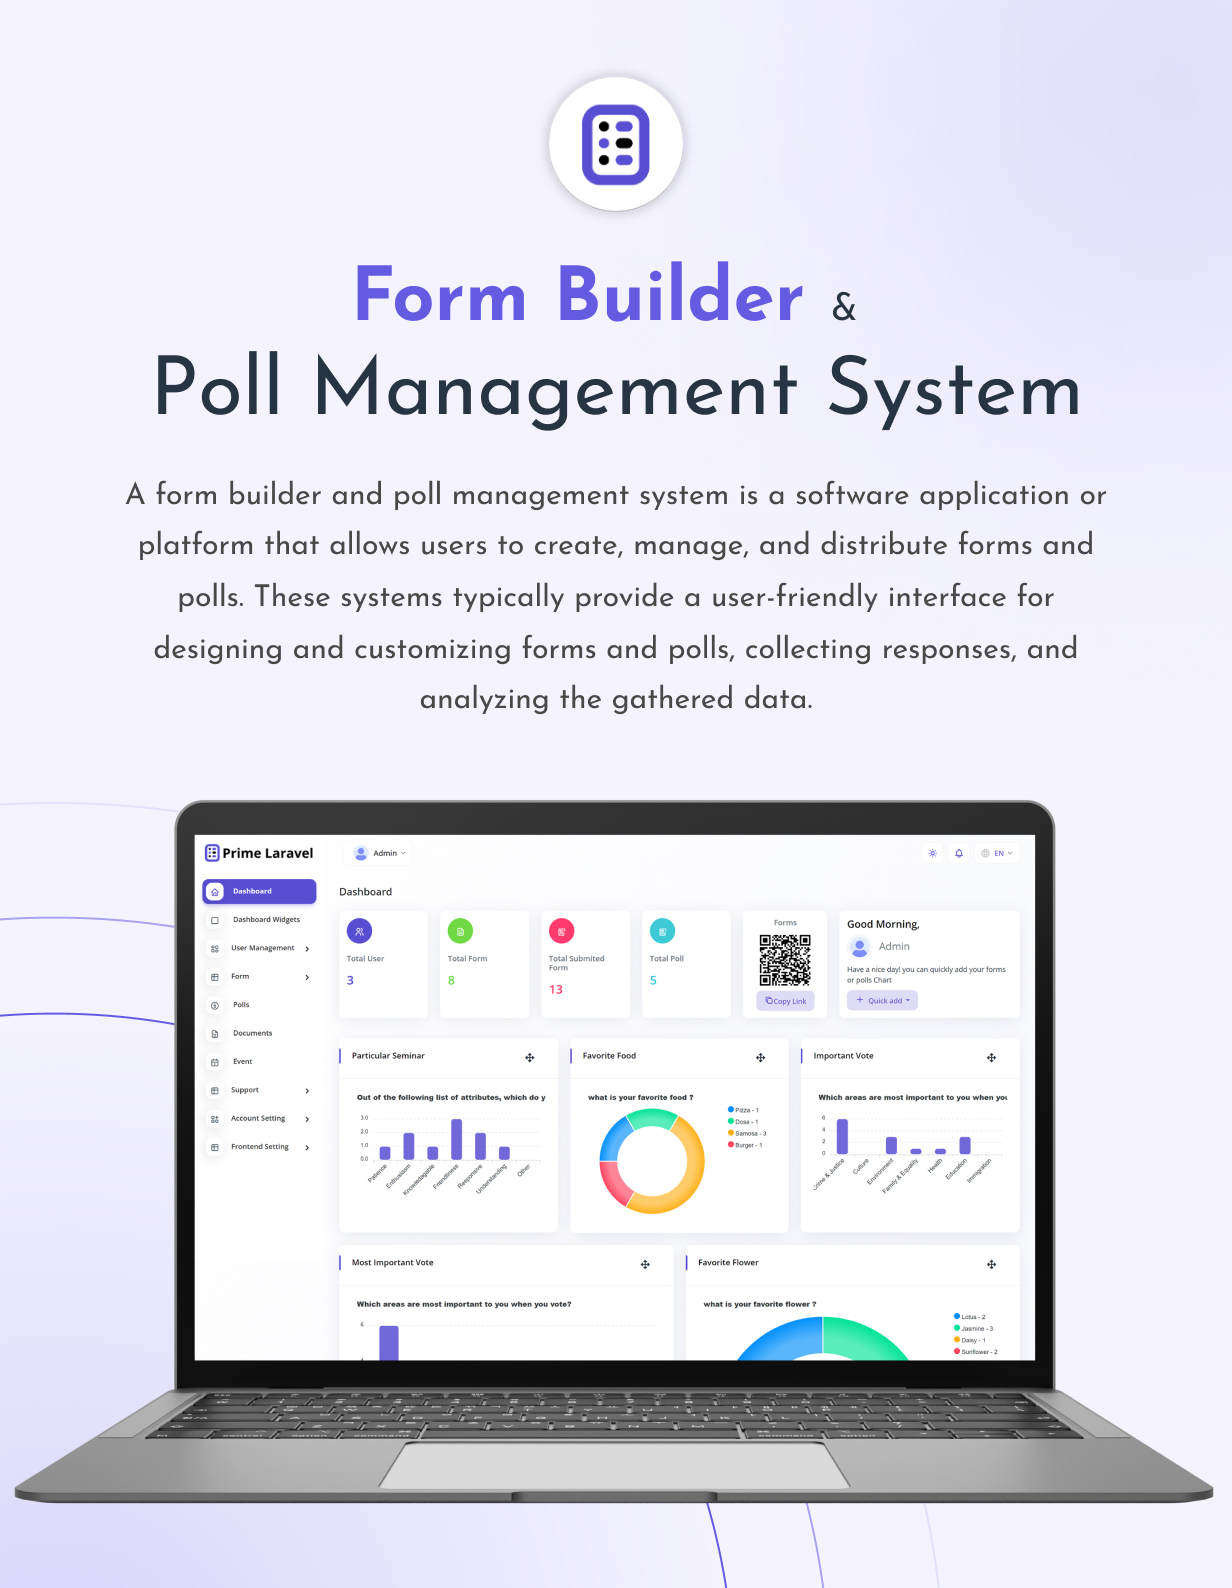 Prime Laravel - Form Builder & Poll Management System - 1